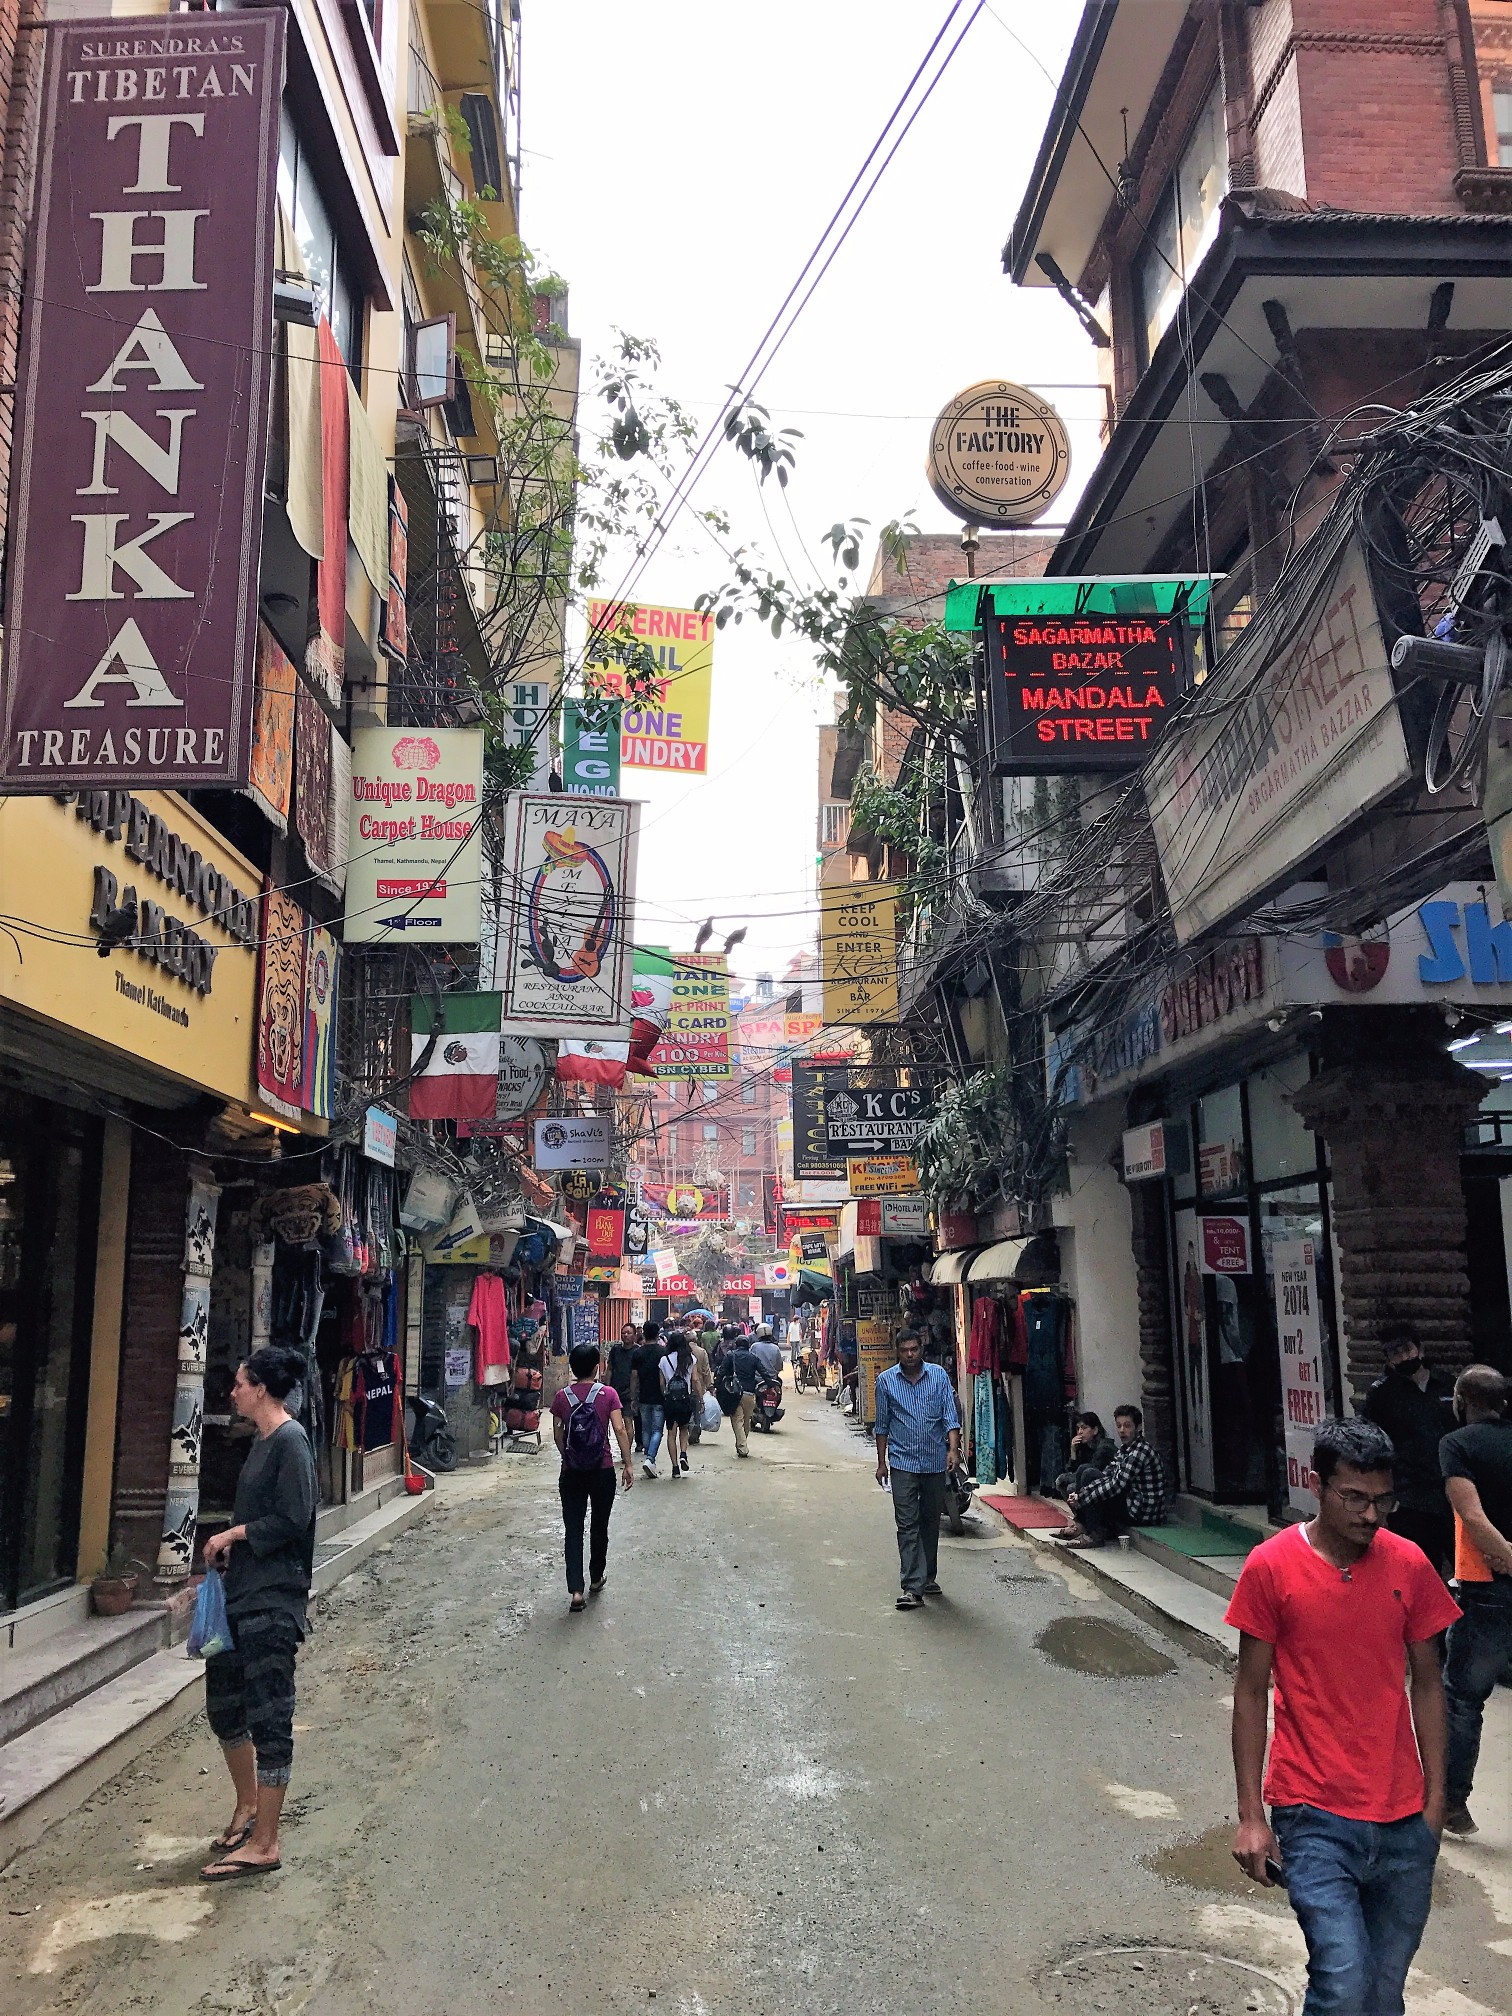 Streets of Thamel, Kathmandu